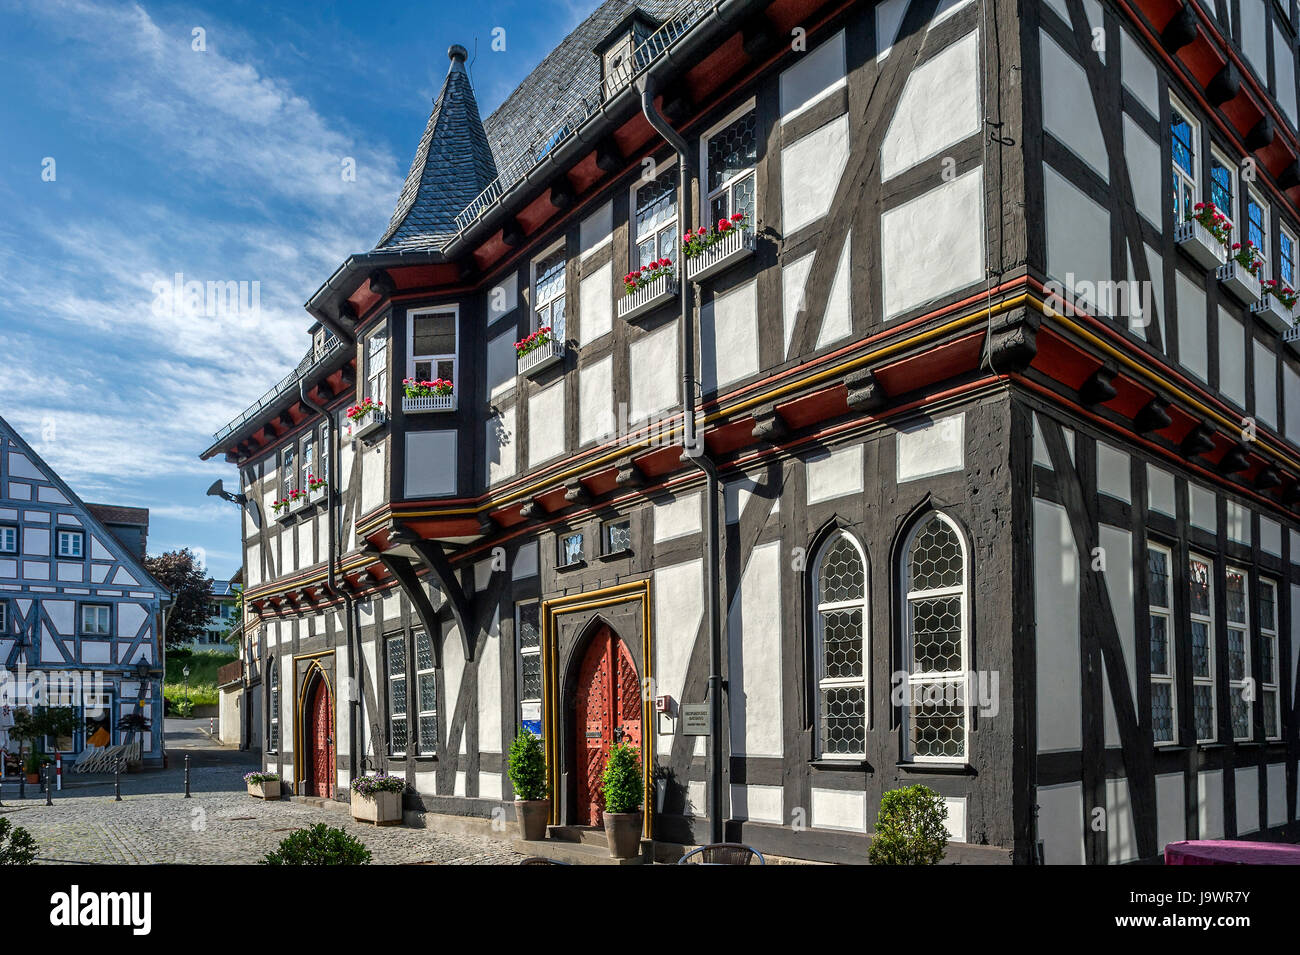 Il municipio storico, stile tardo gotico a struttura mista in legno e muratura edificio, Schotten, Hesse, Germania Foto Stock